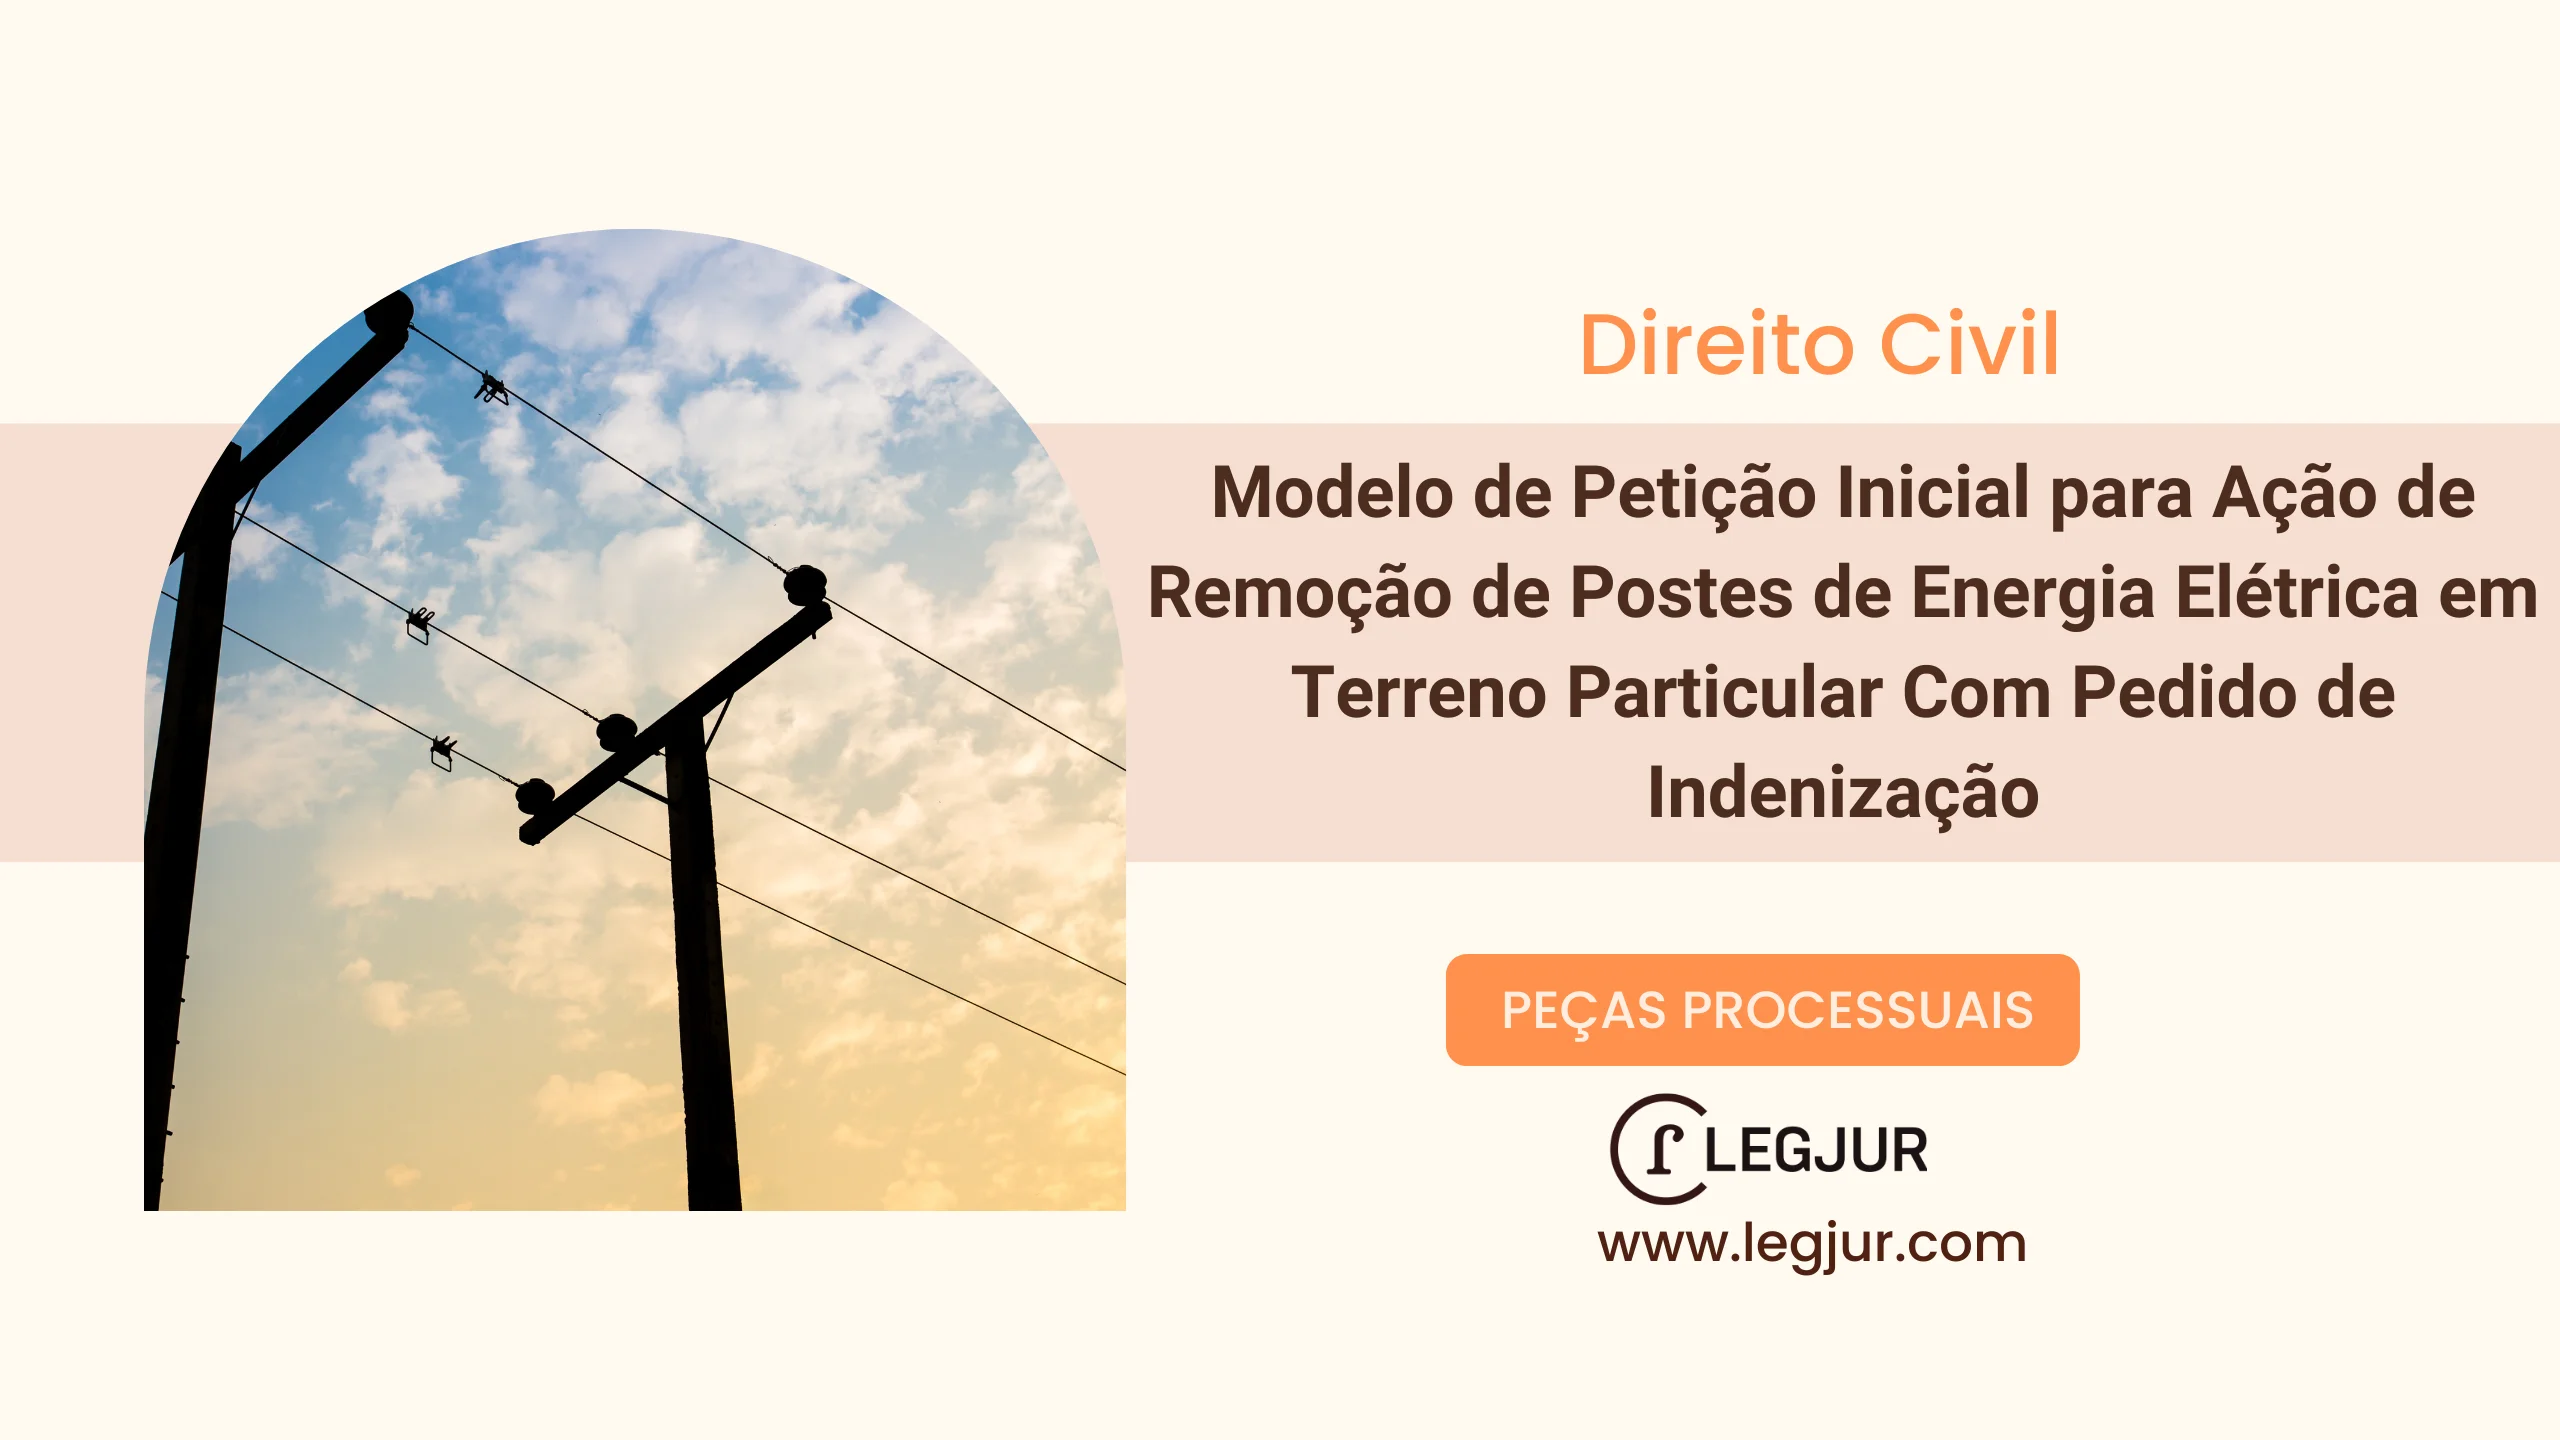 Modelo de Petição Inicial para Ação de Remoção de Postes de Energia Elétrica em Terreno Particular Com Pedido de Indenização